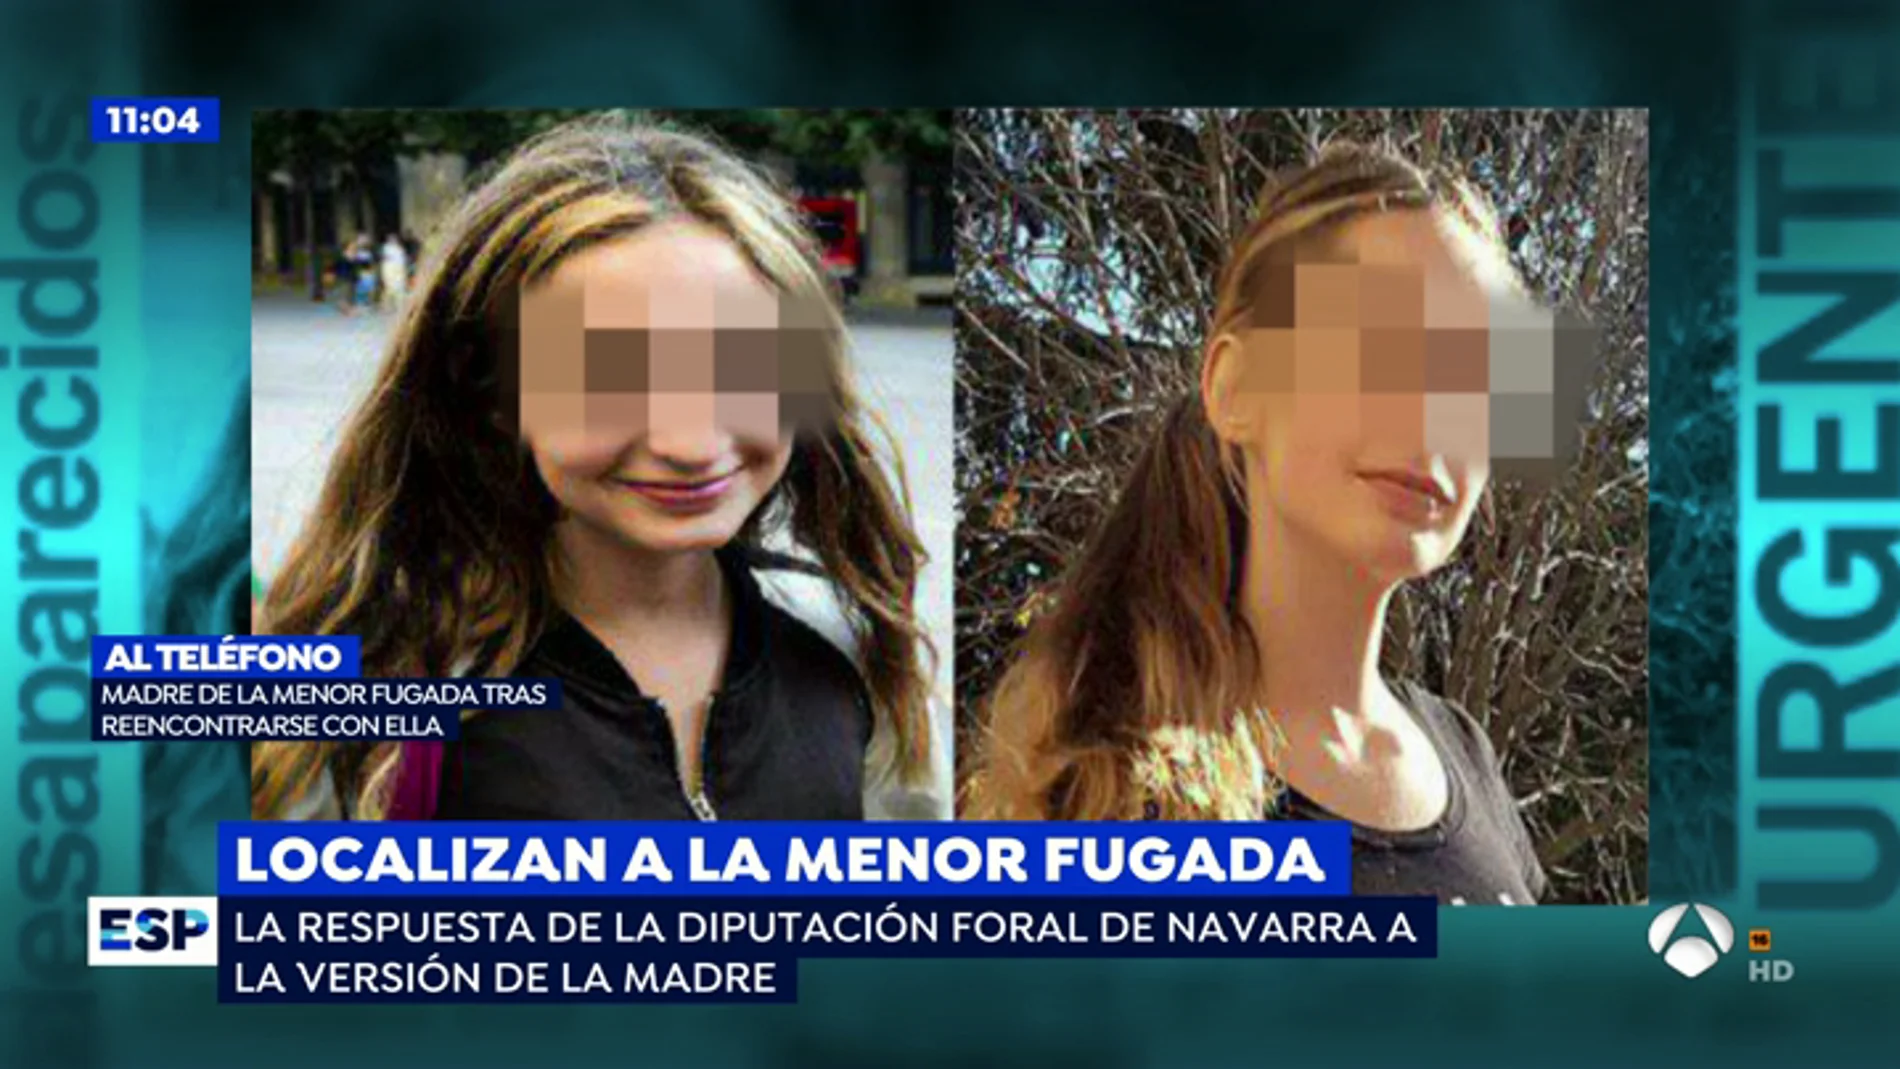 Encuentran a la joven de 15 años desaparecida en Navarra: "Mi hija y yo tenemos muchas conversaciones pendientes"